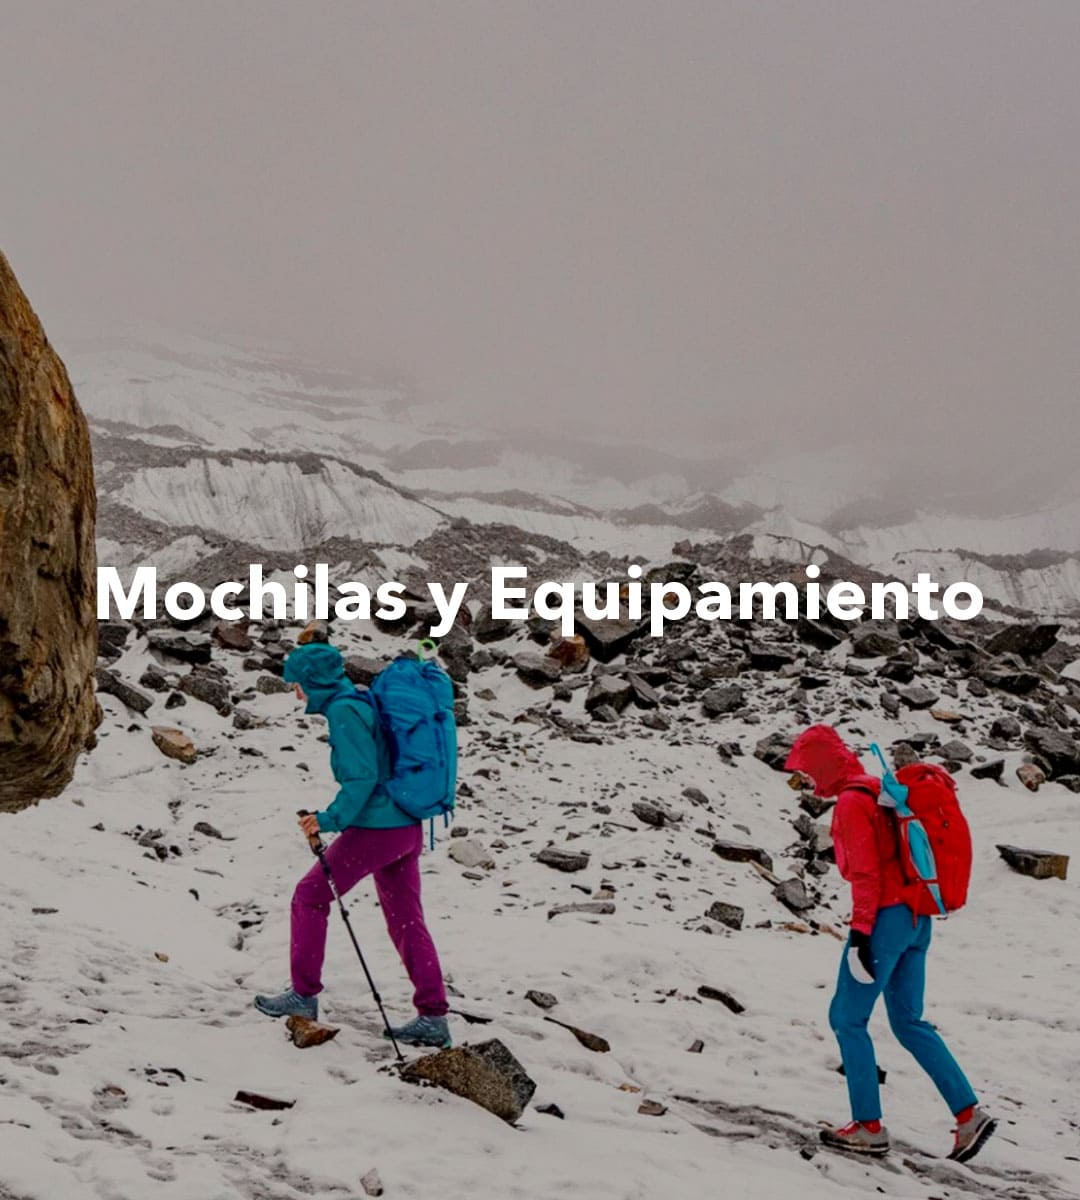 Mochilas y Equipamiento - Patagonia Equipamiento Outdoor – Patagonia Chile